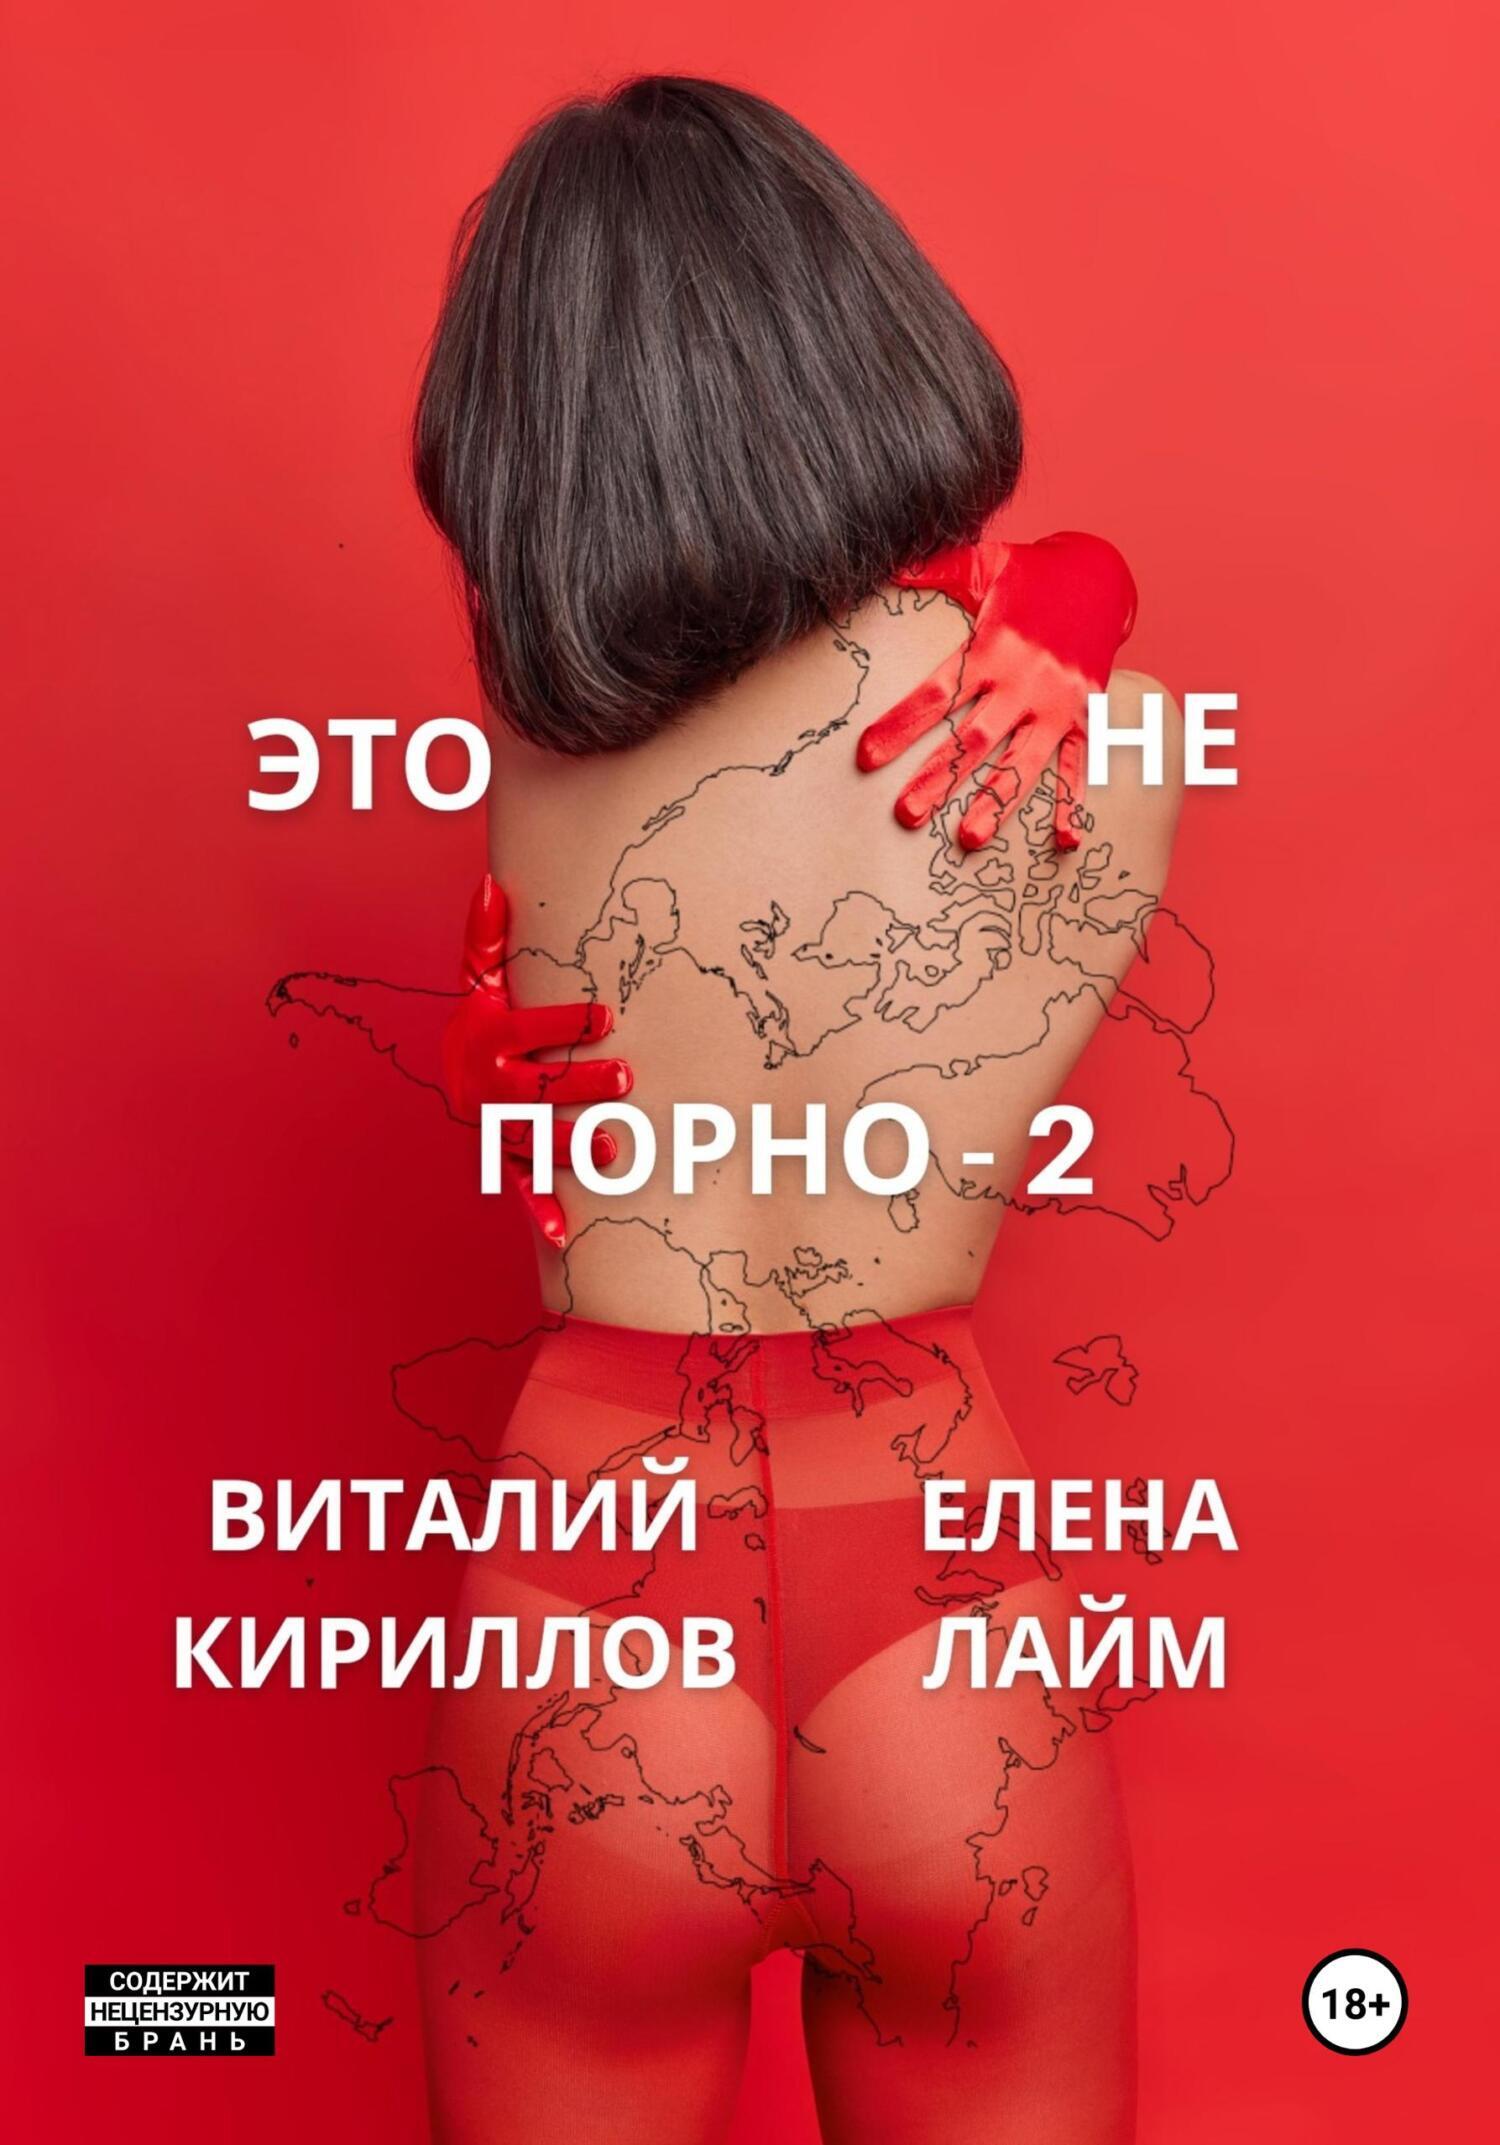 Секс как трахаются - большая коллекция русского порно на укатлант.рф